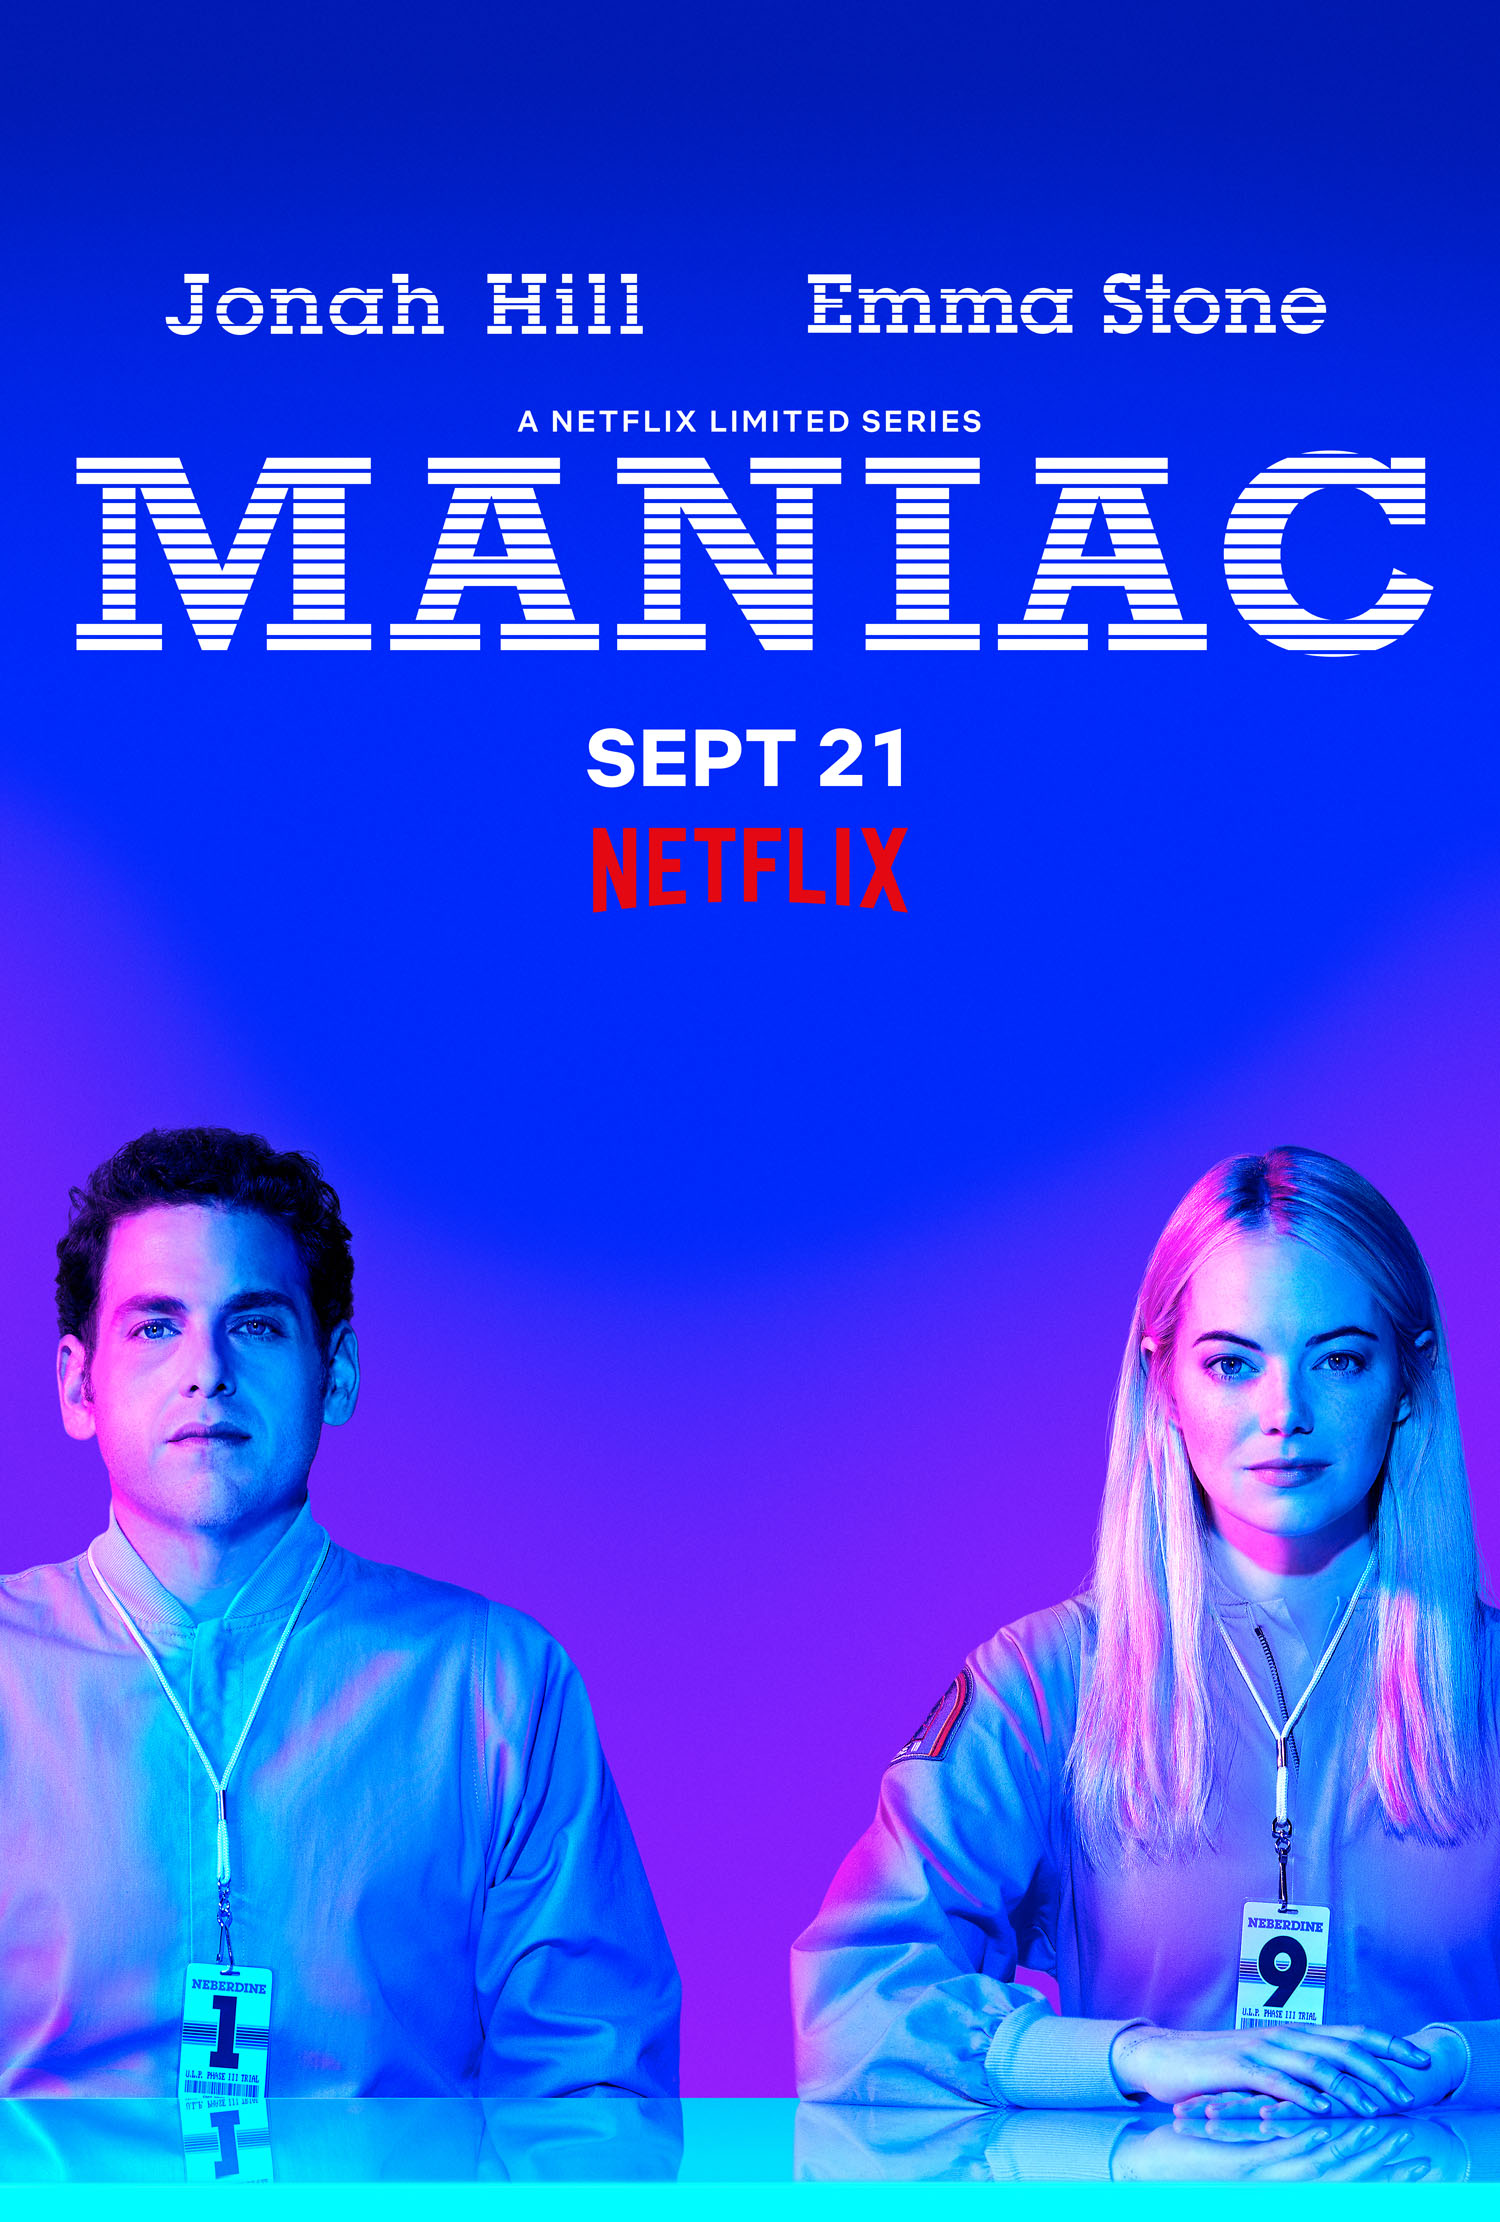 Amor en tiempos de ciencia: Netflix liberó un nuevo teaser de ‘Maniac’